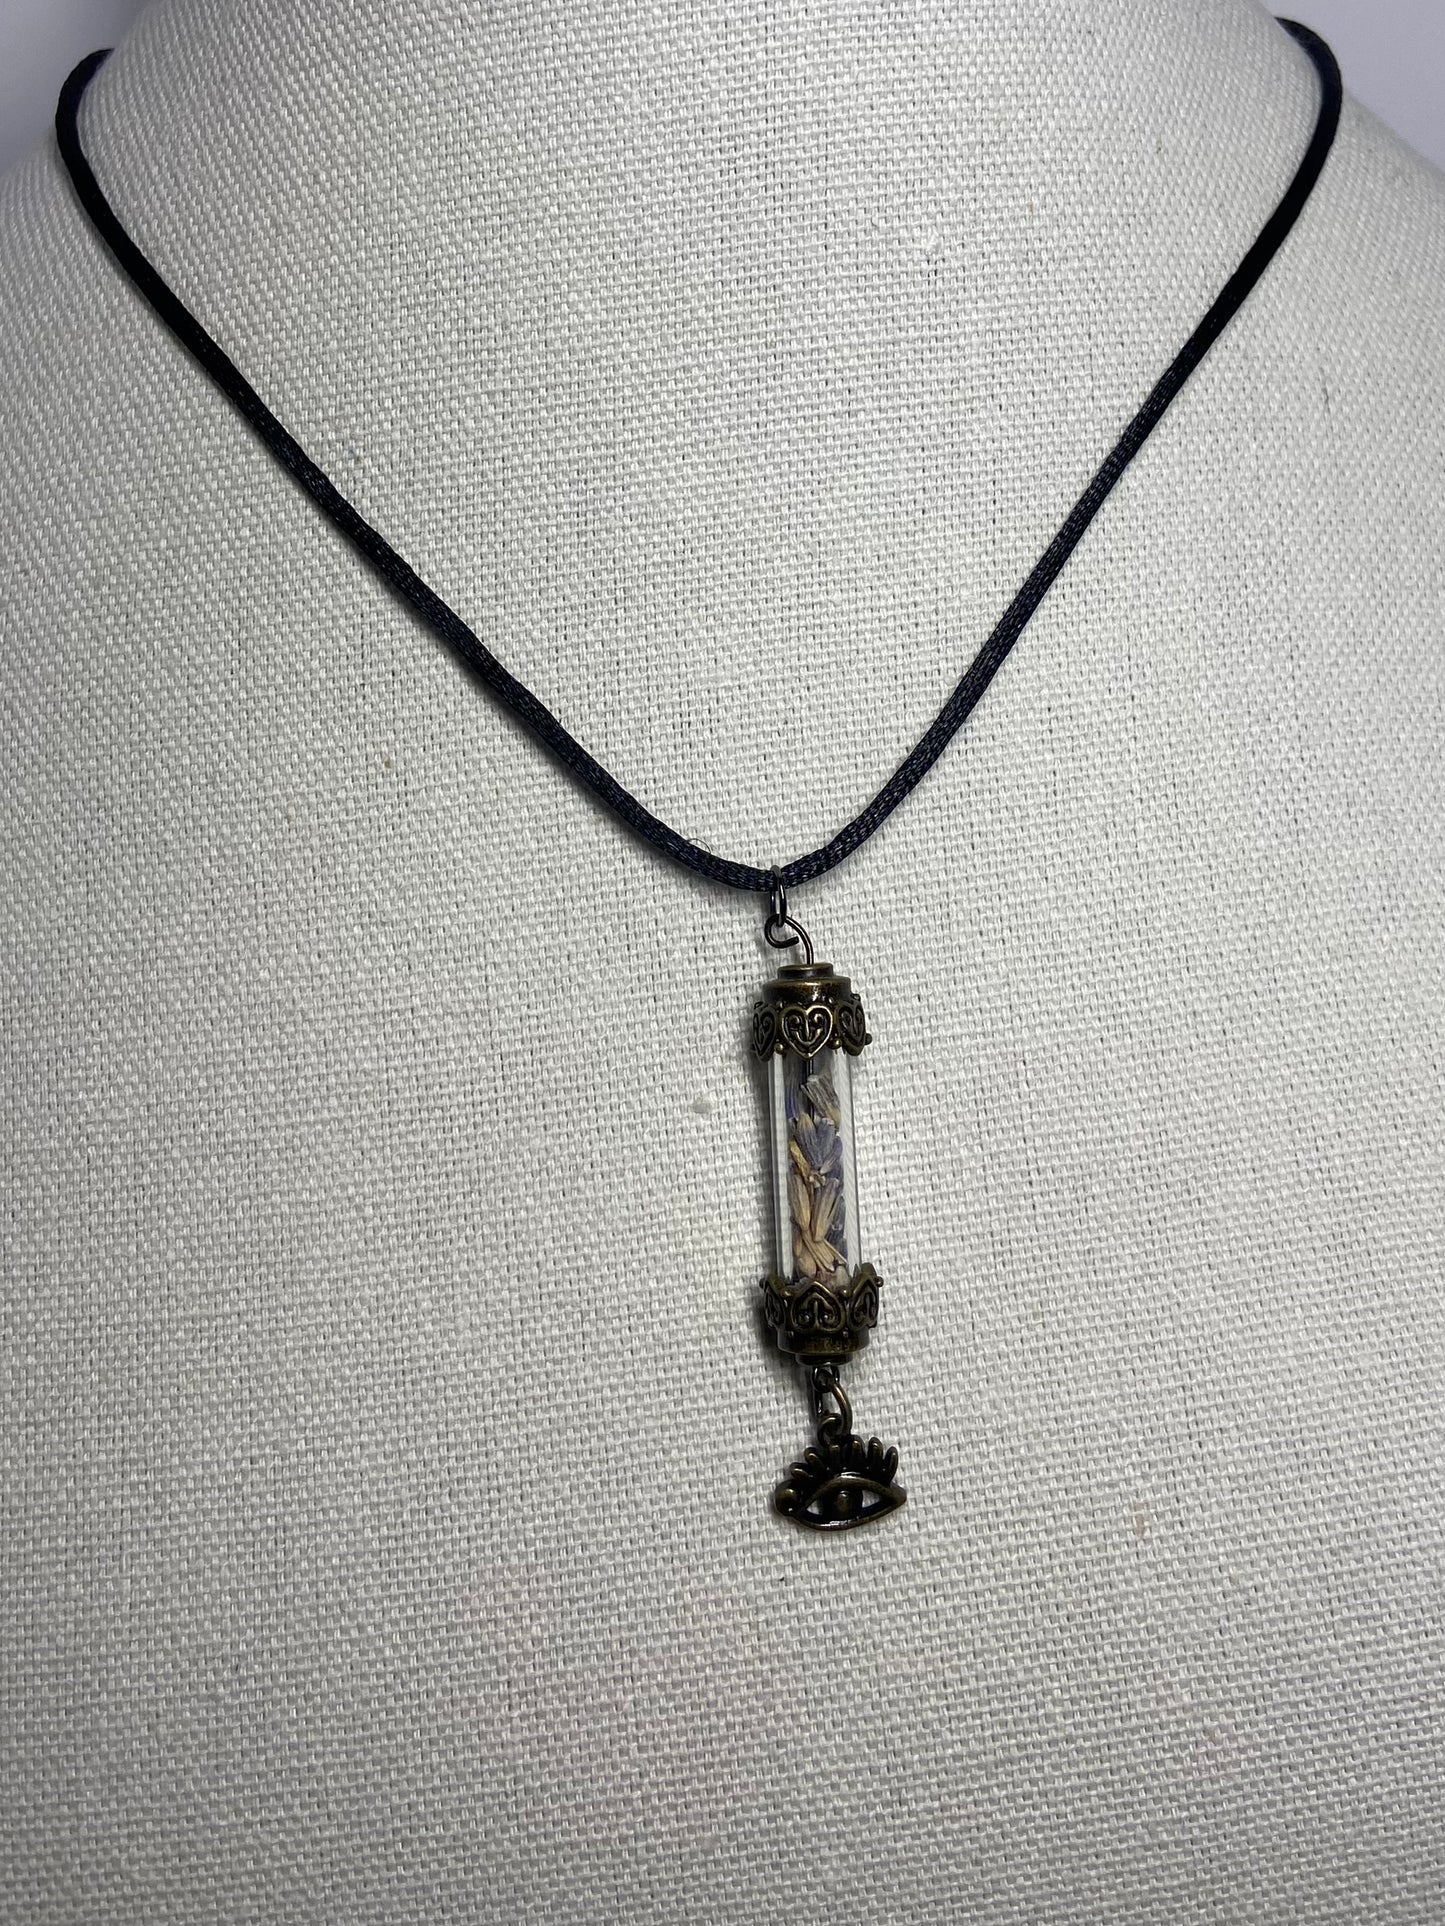 Necklace antique lavender